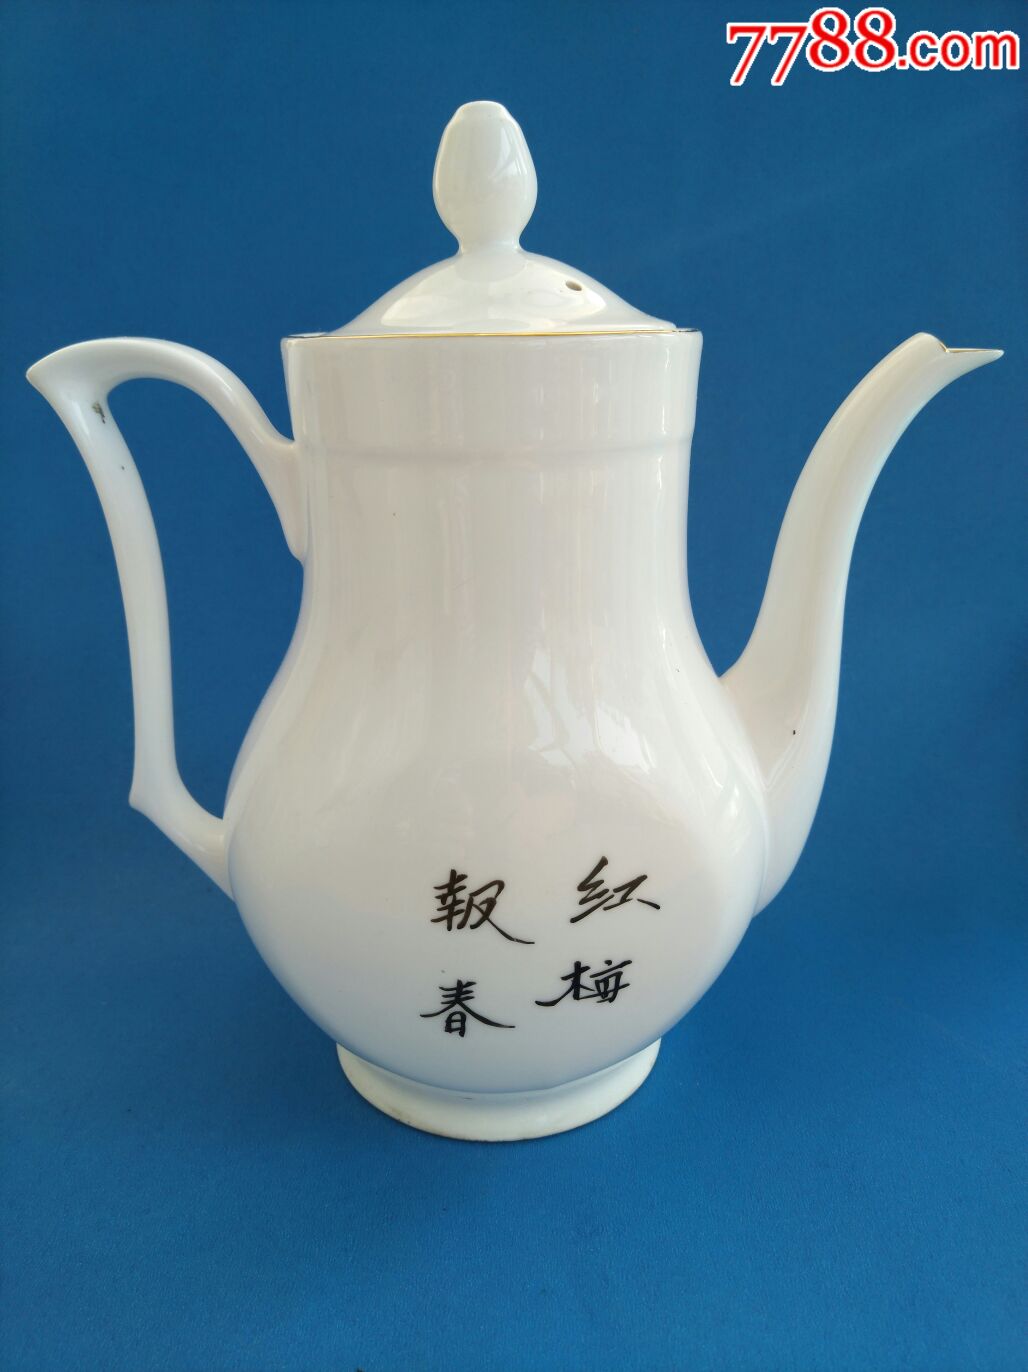 山东淄博陶瓷厂,手绘梅花壶